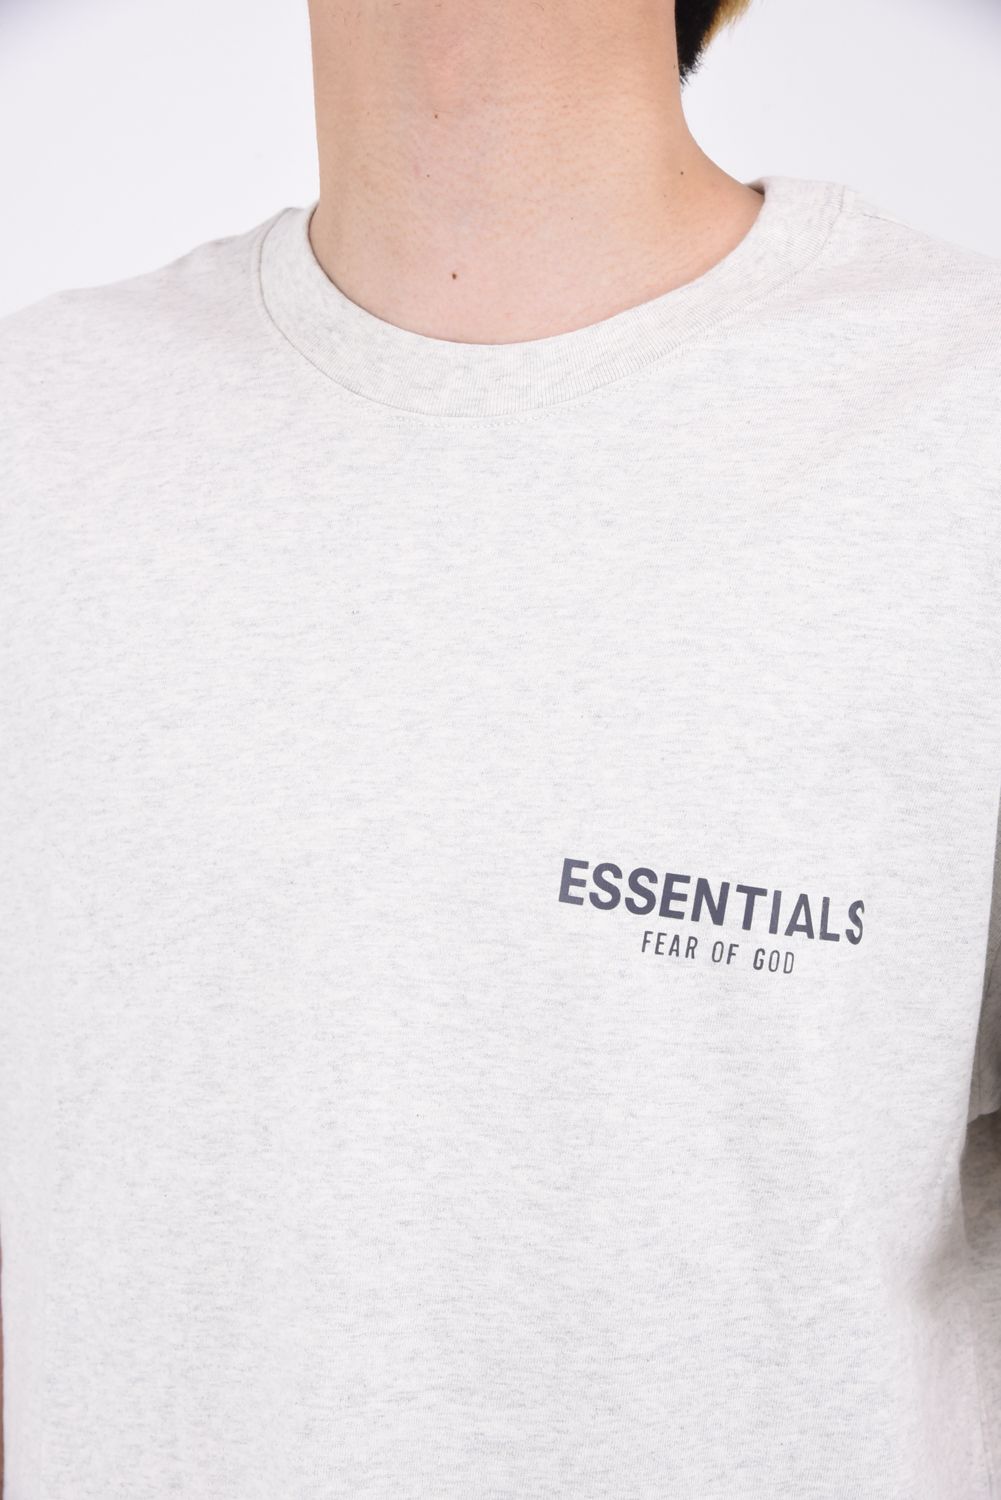 FOG ESSENTIALS - ESSENTIALS ONE POINT LOGO T-Shirt / ワンポイント